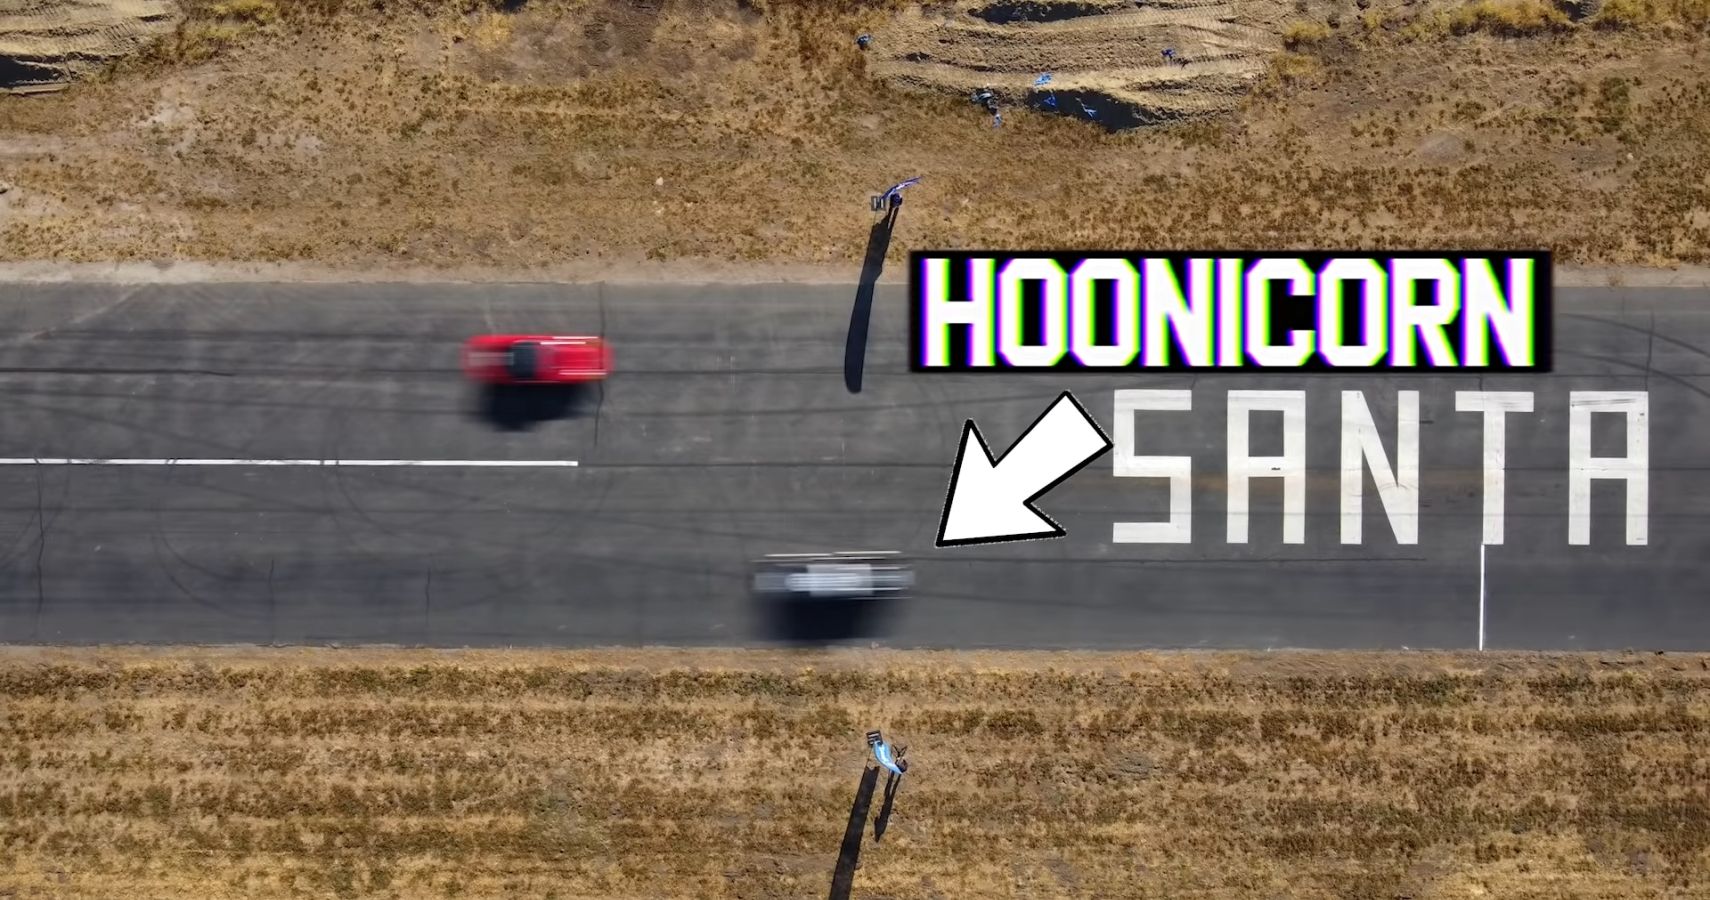 Carrera final de Hoonicorn contra F12